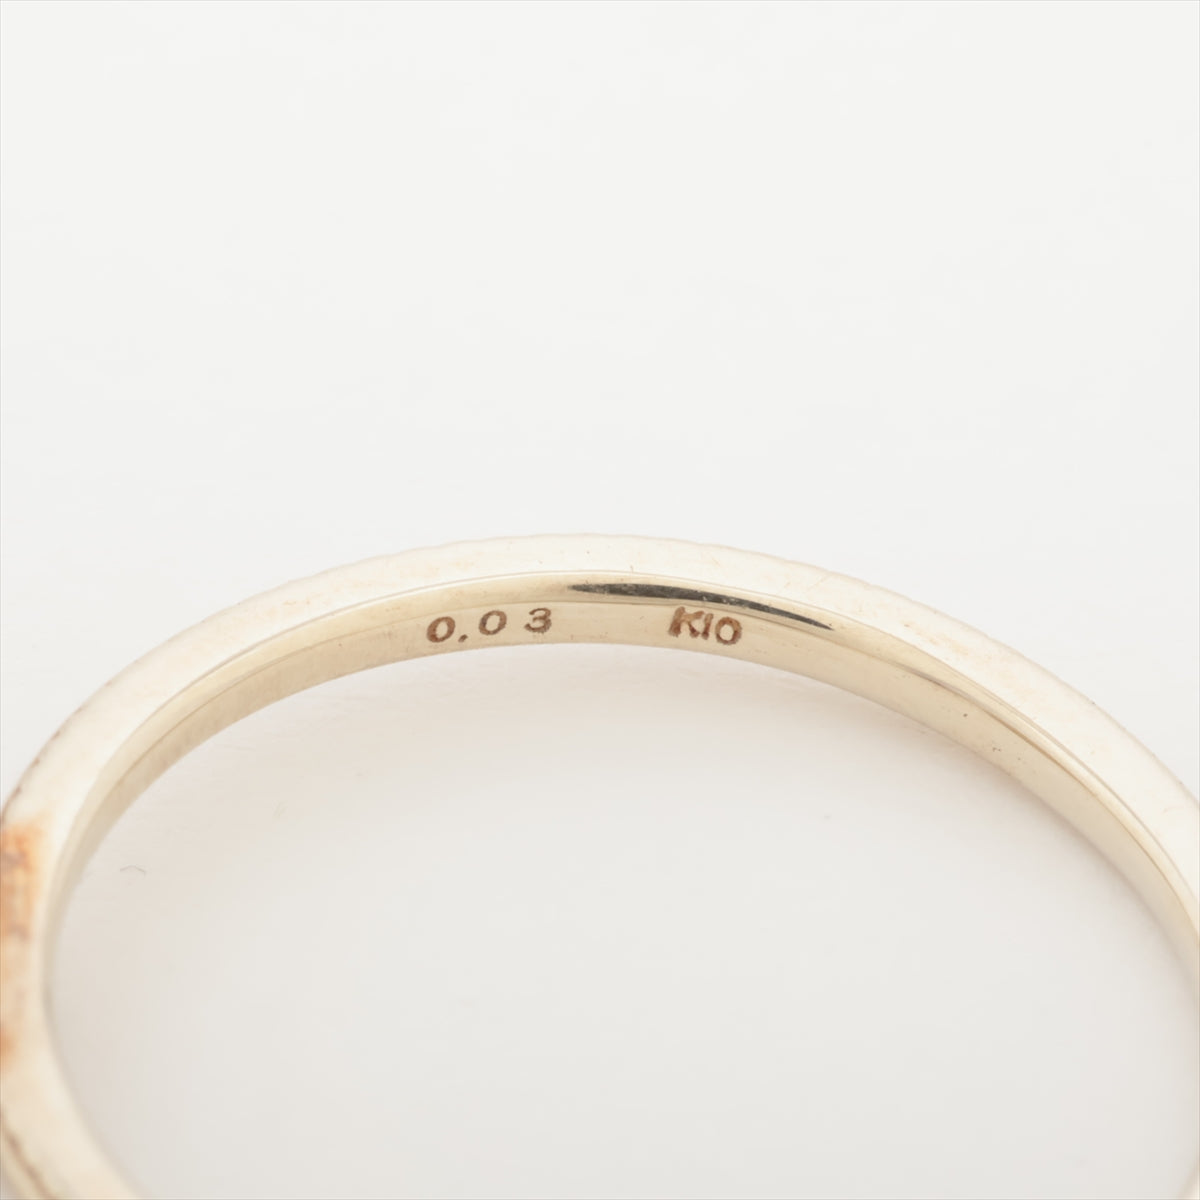 Agat Diamond Ring K10 (WG) 1.1g 0.03 E